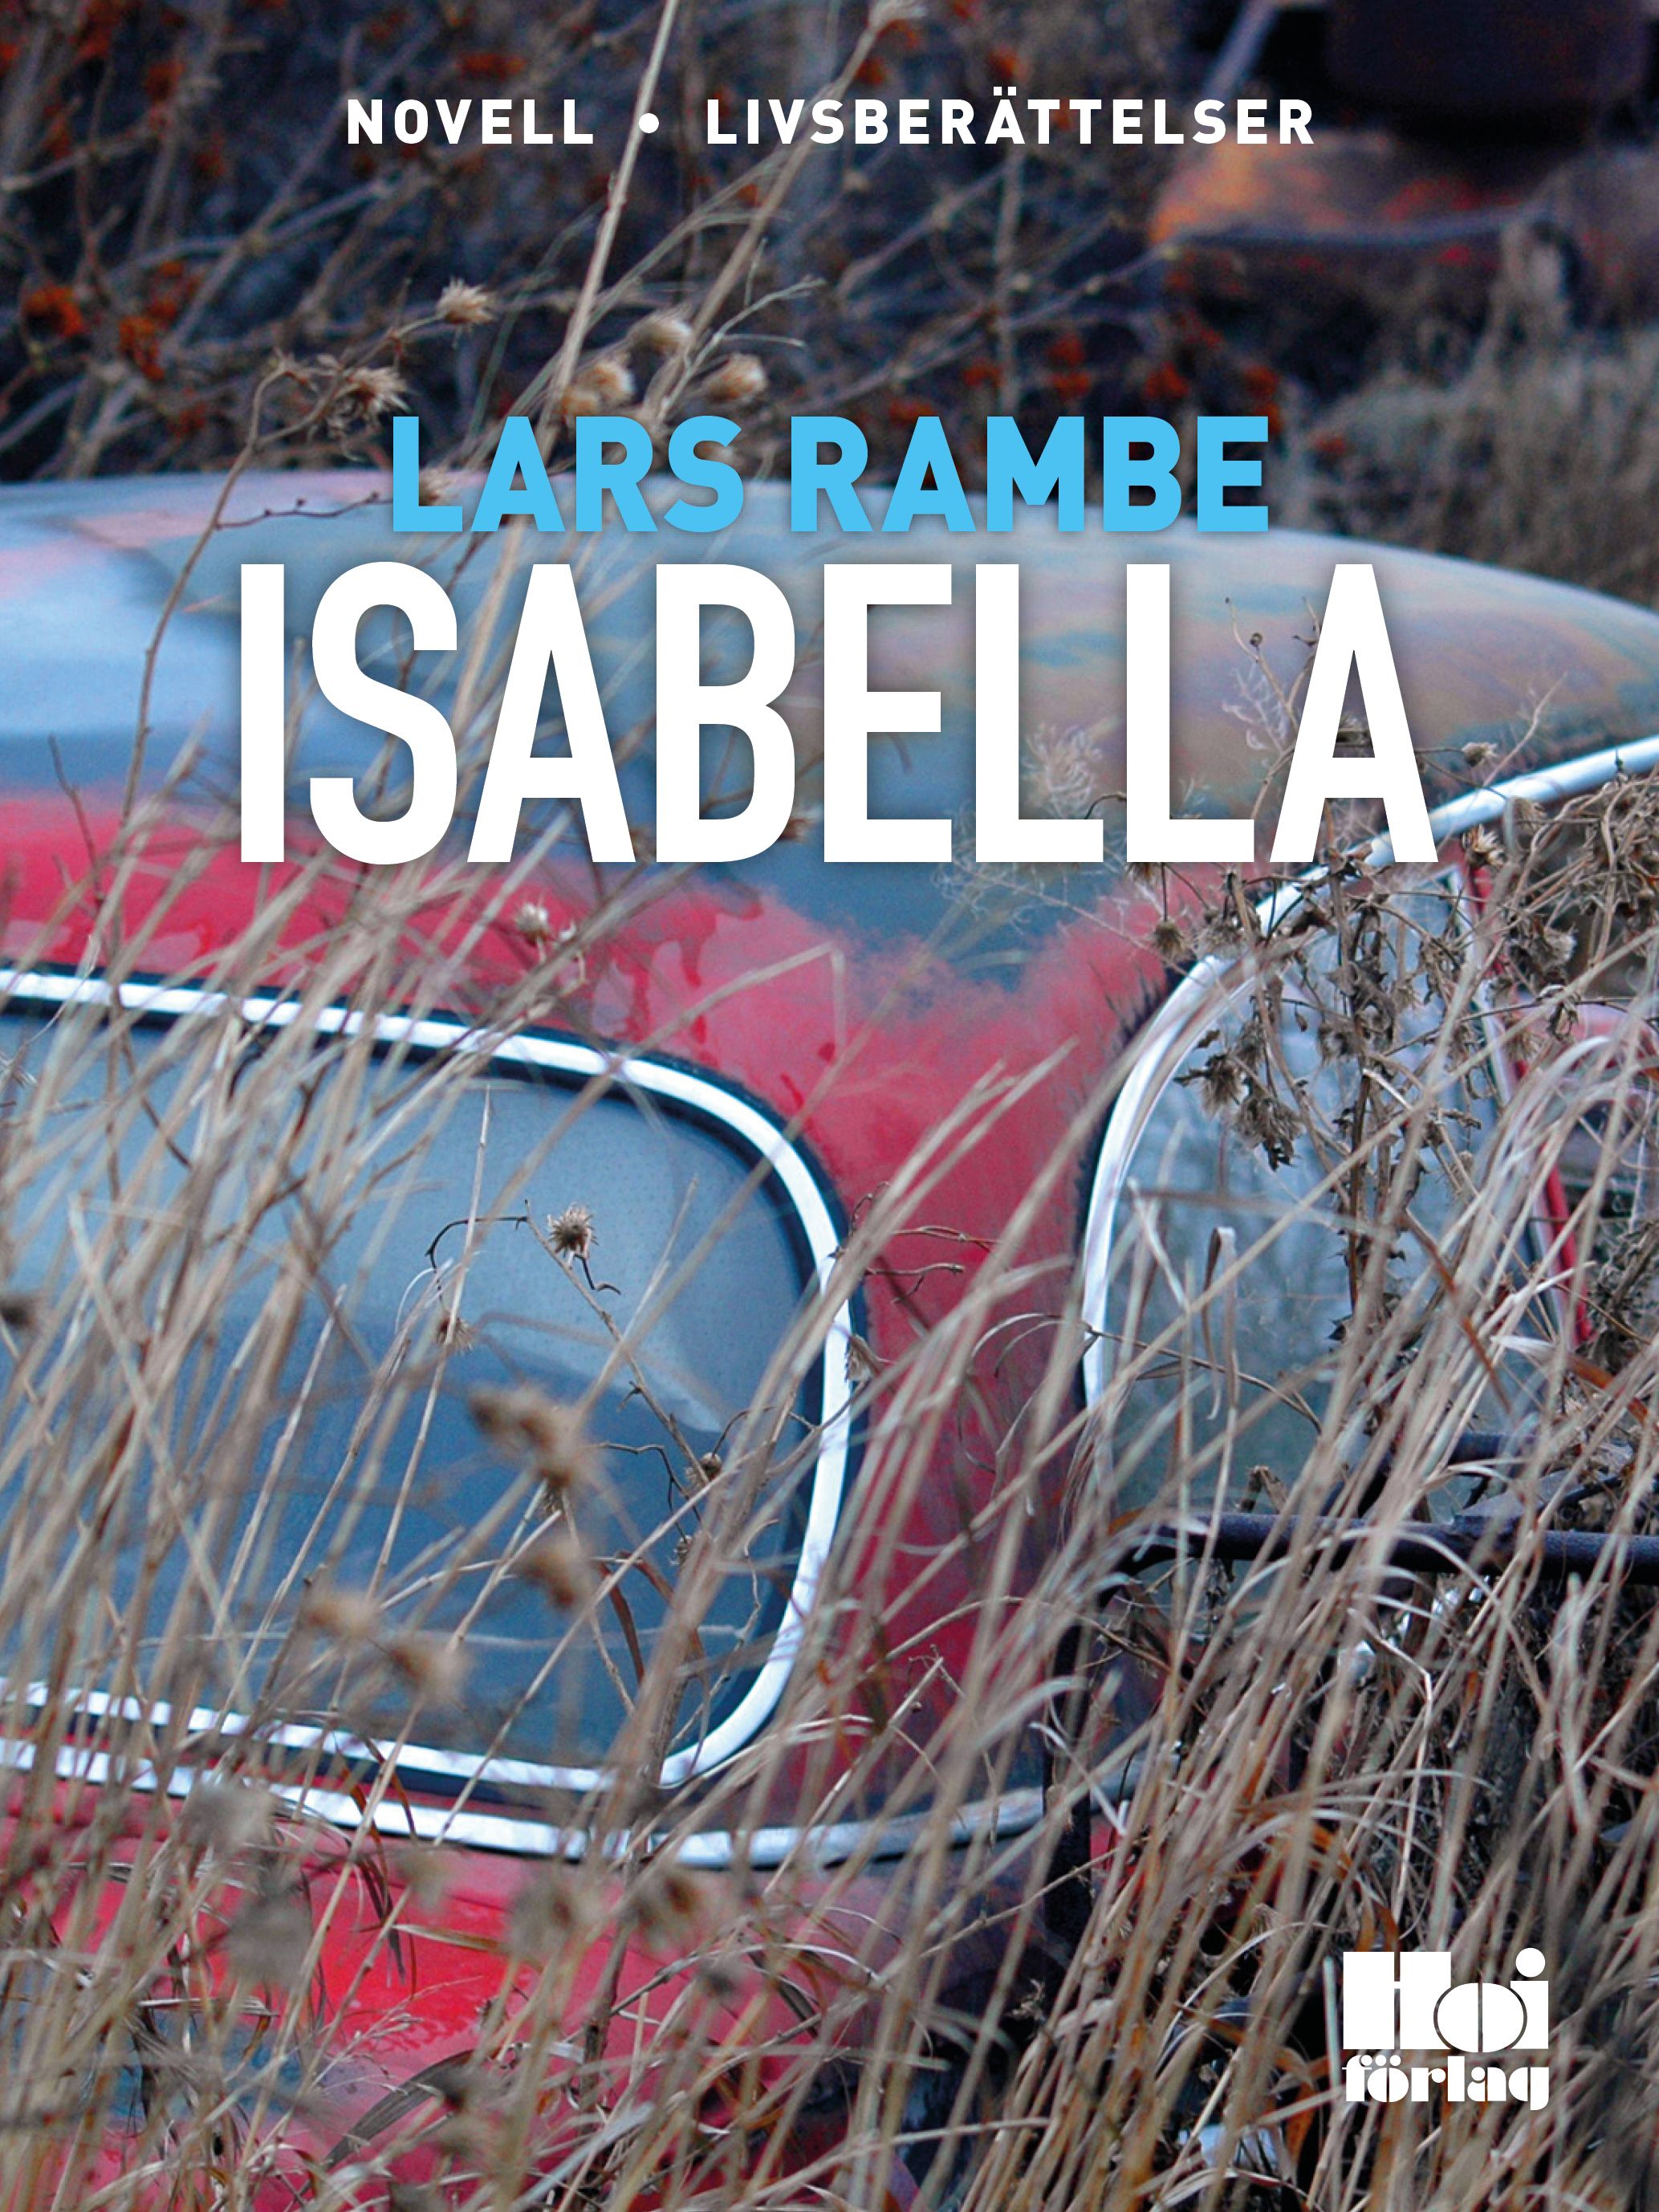 Isabella, e-bog af Lars Rambe